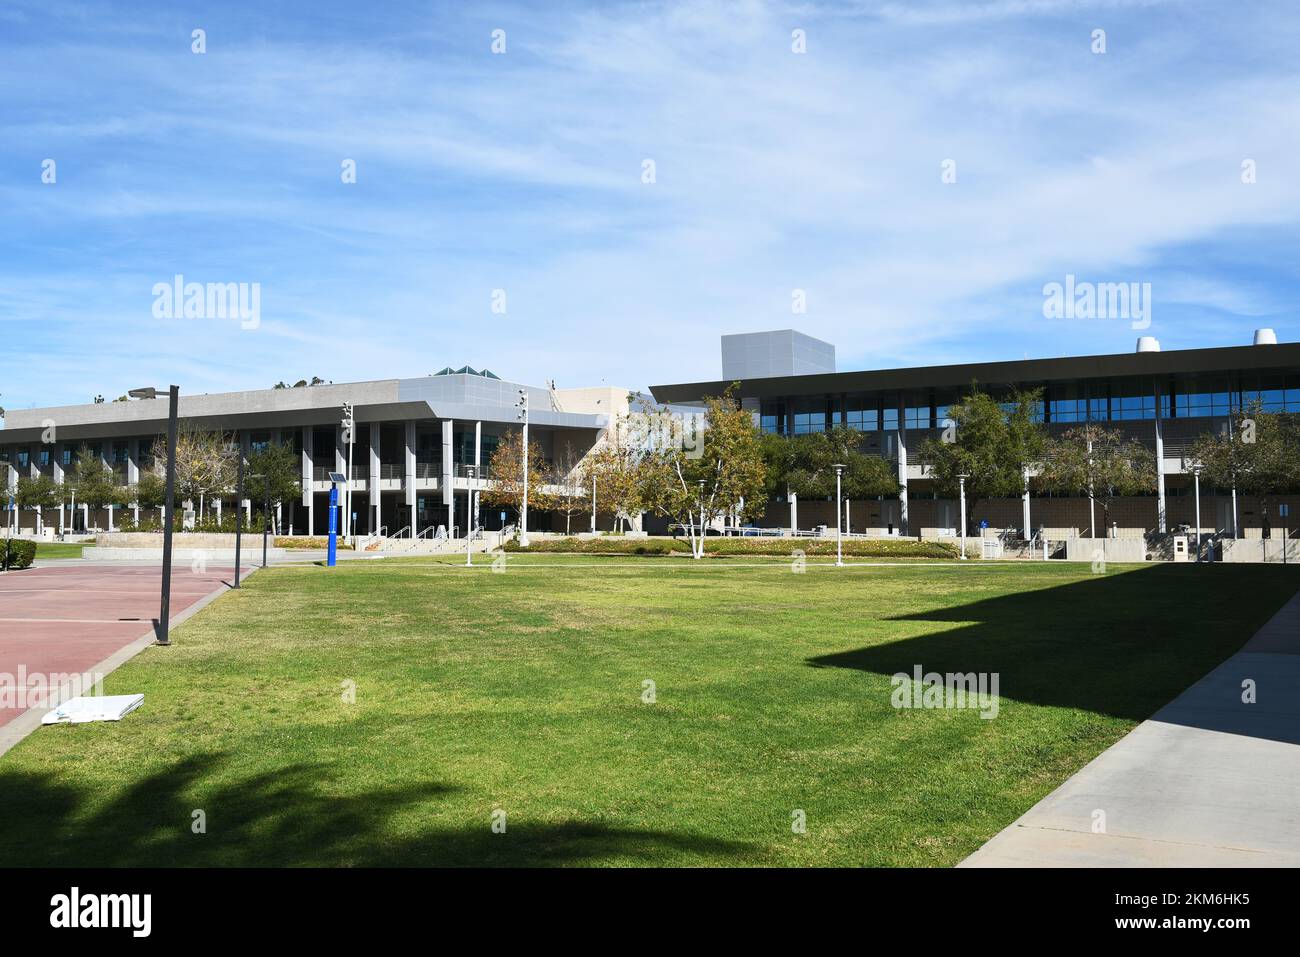 ORANGE, KALIFORNIEN - 25. NOVEMBER 2022: Strenger Plaza mit Blick auf die Gebäude des Humanities and Science Center auf dem Campus des Santiago Canyon College. Stockfoto